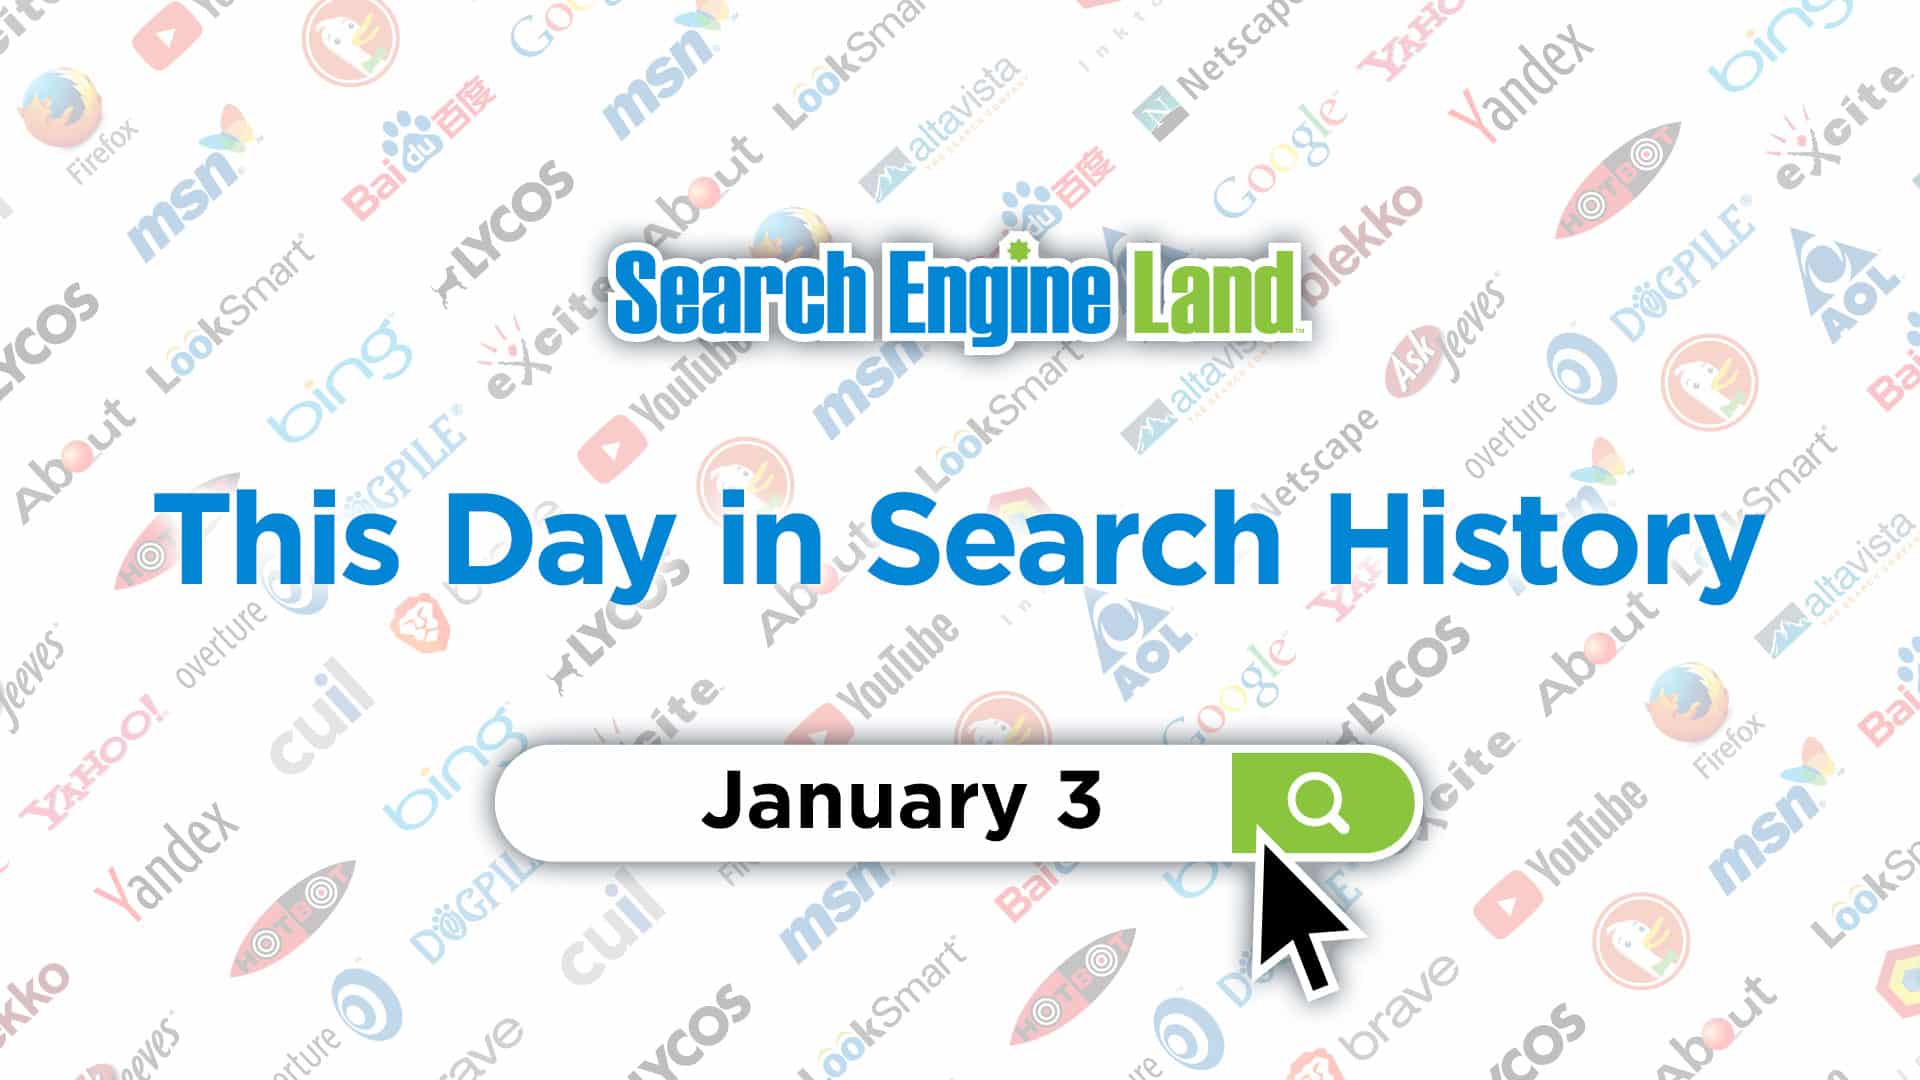 این روز در تاریخچه بازاریابی جستجو: 3 ژانویه, محتوا مارکتینگ